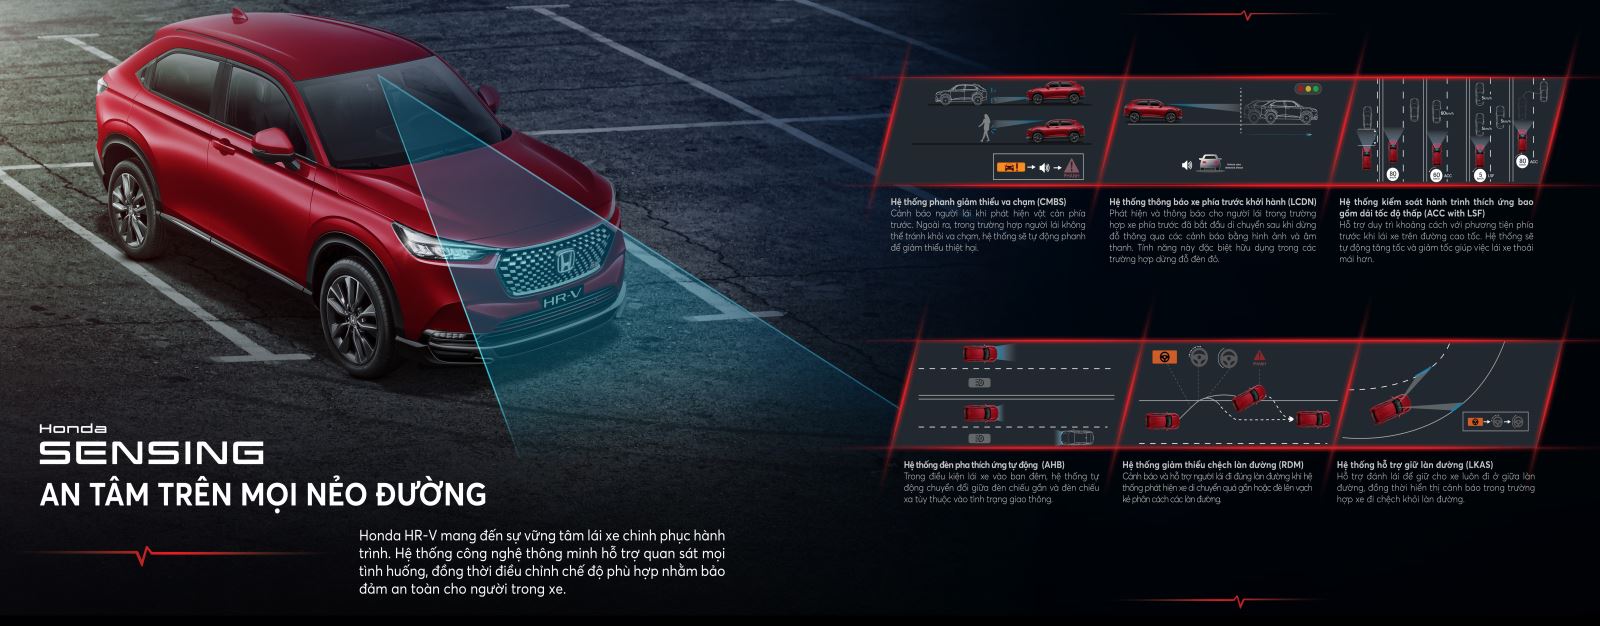 Honda HR-V G được trang bị các tính năng an toàn tiên tiến nhất